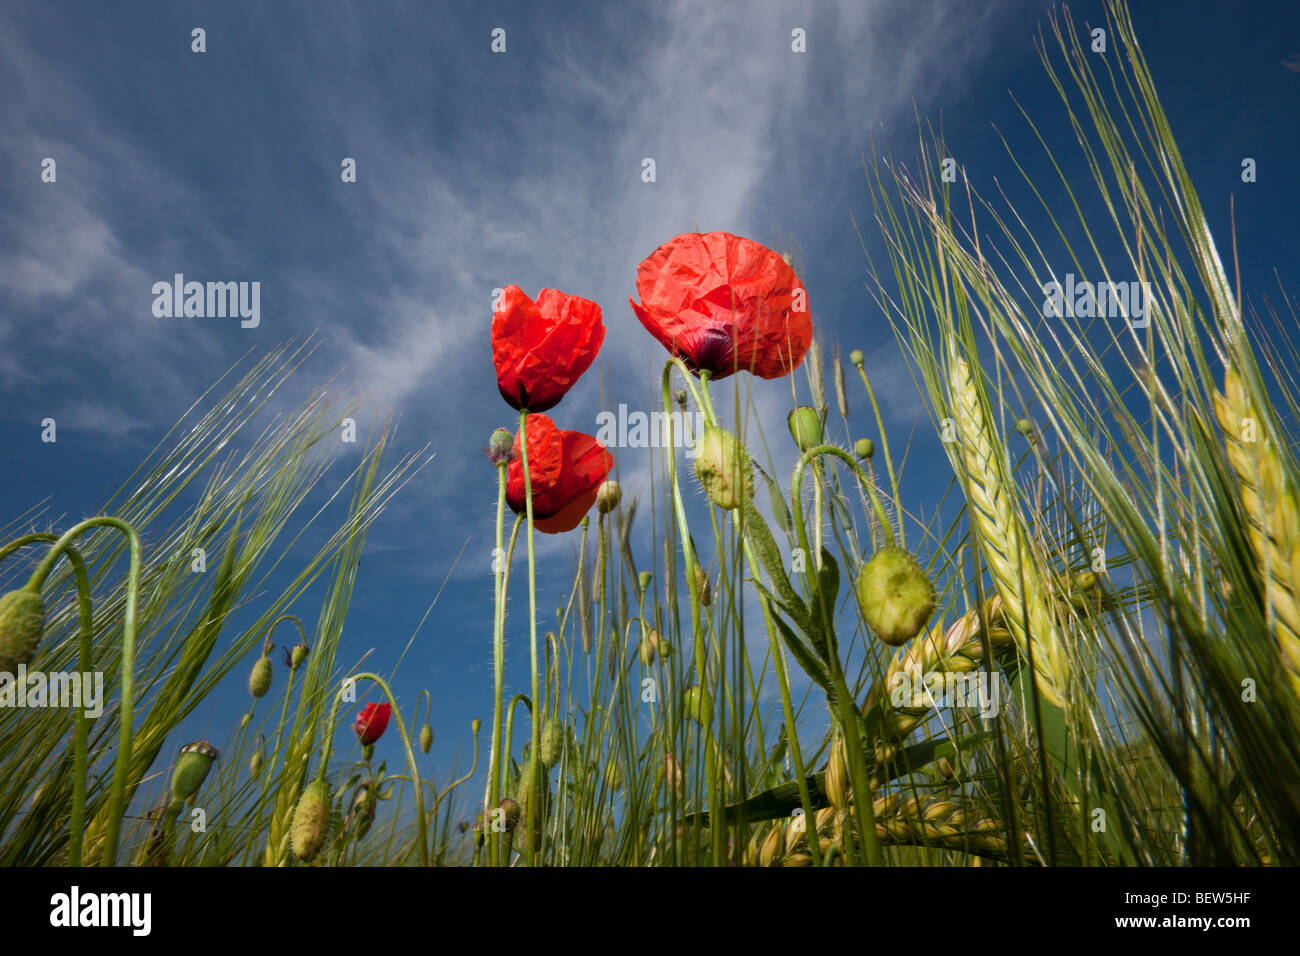 Amapola Roja en el campo de maíz, Papaver rhoeas, Munich, Baviera, Alemania Foto de stock